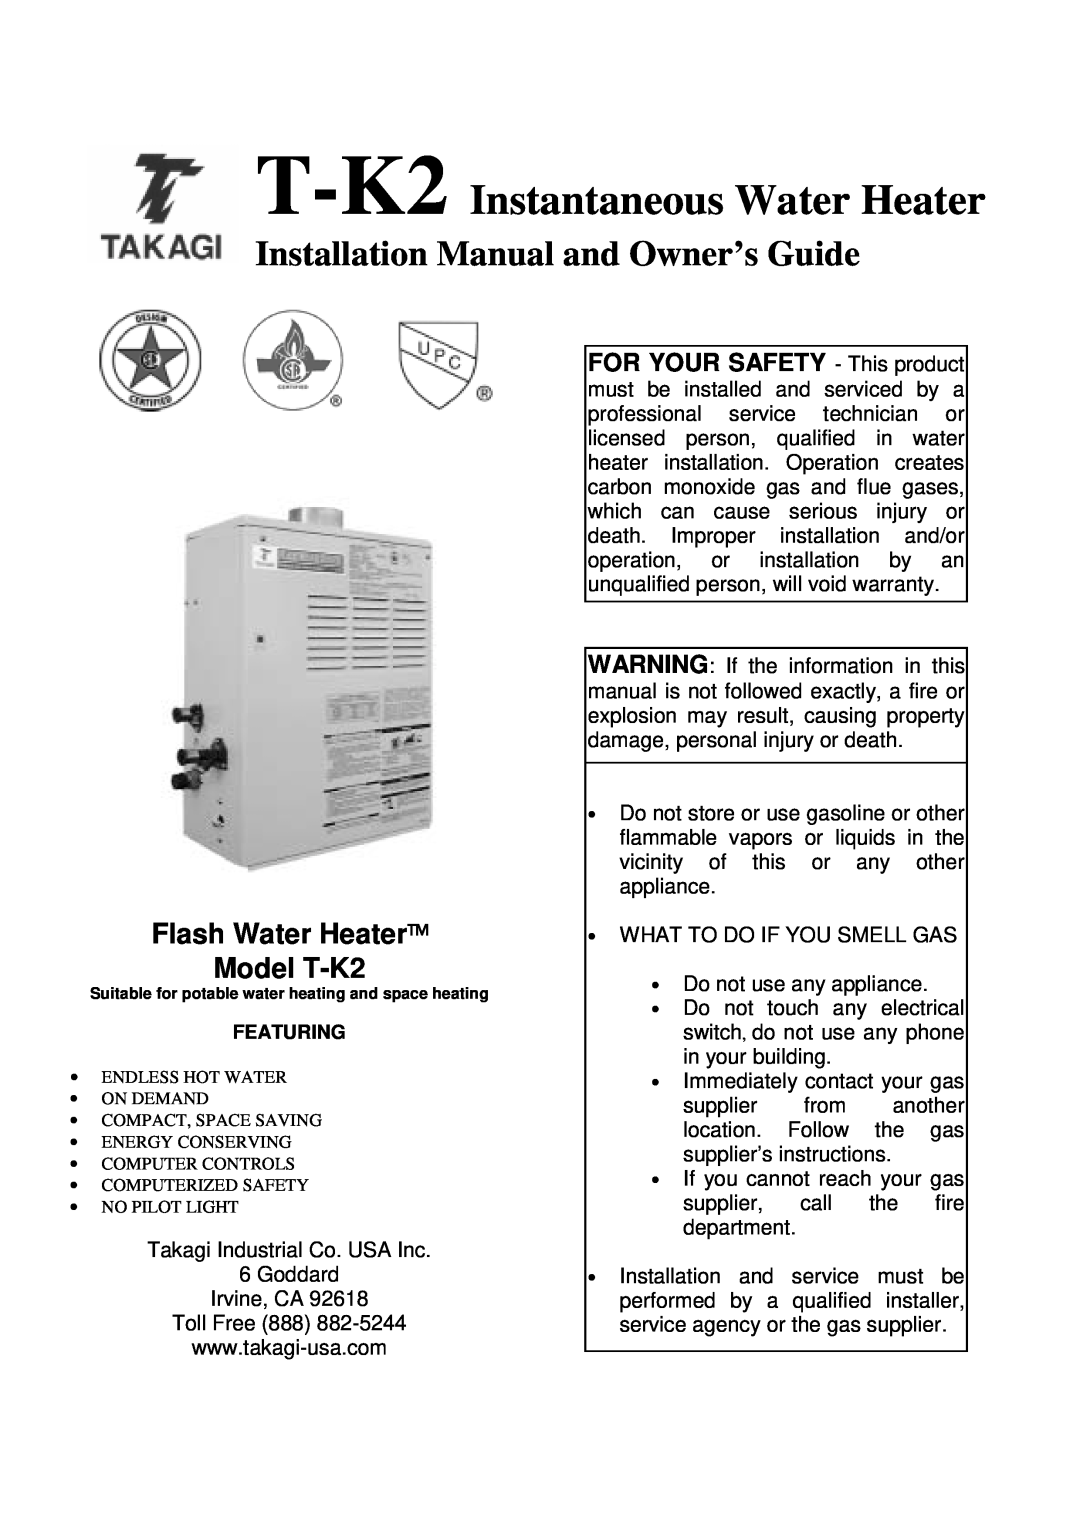 Whirlpool installation manual Flash Water Heater Model T-K2, T-K2 Instantaneous Water Heater 